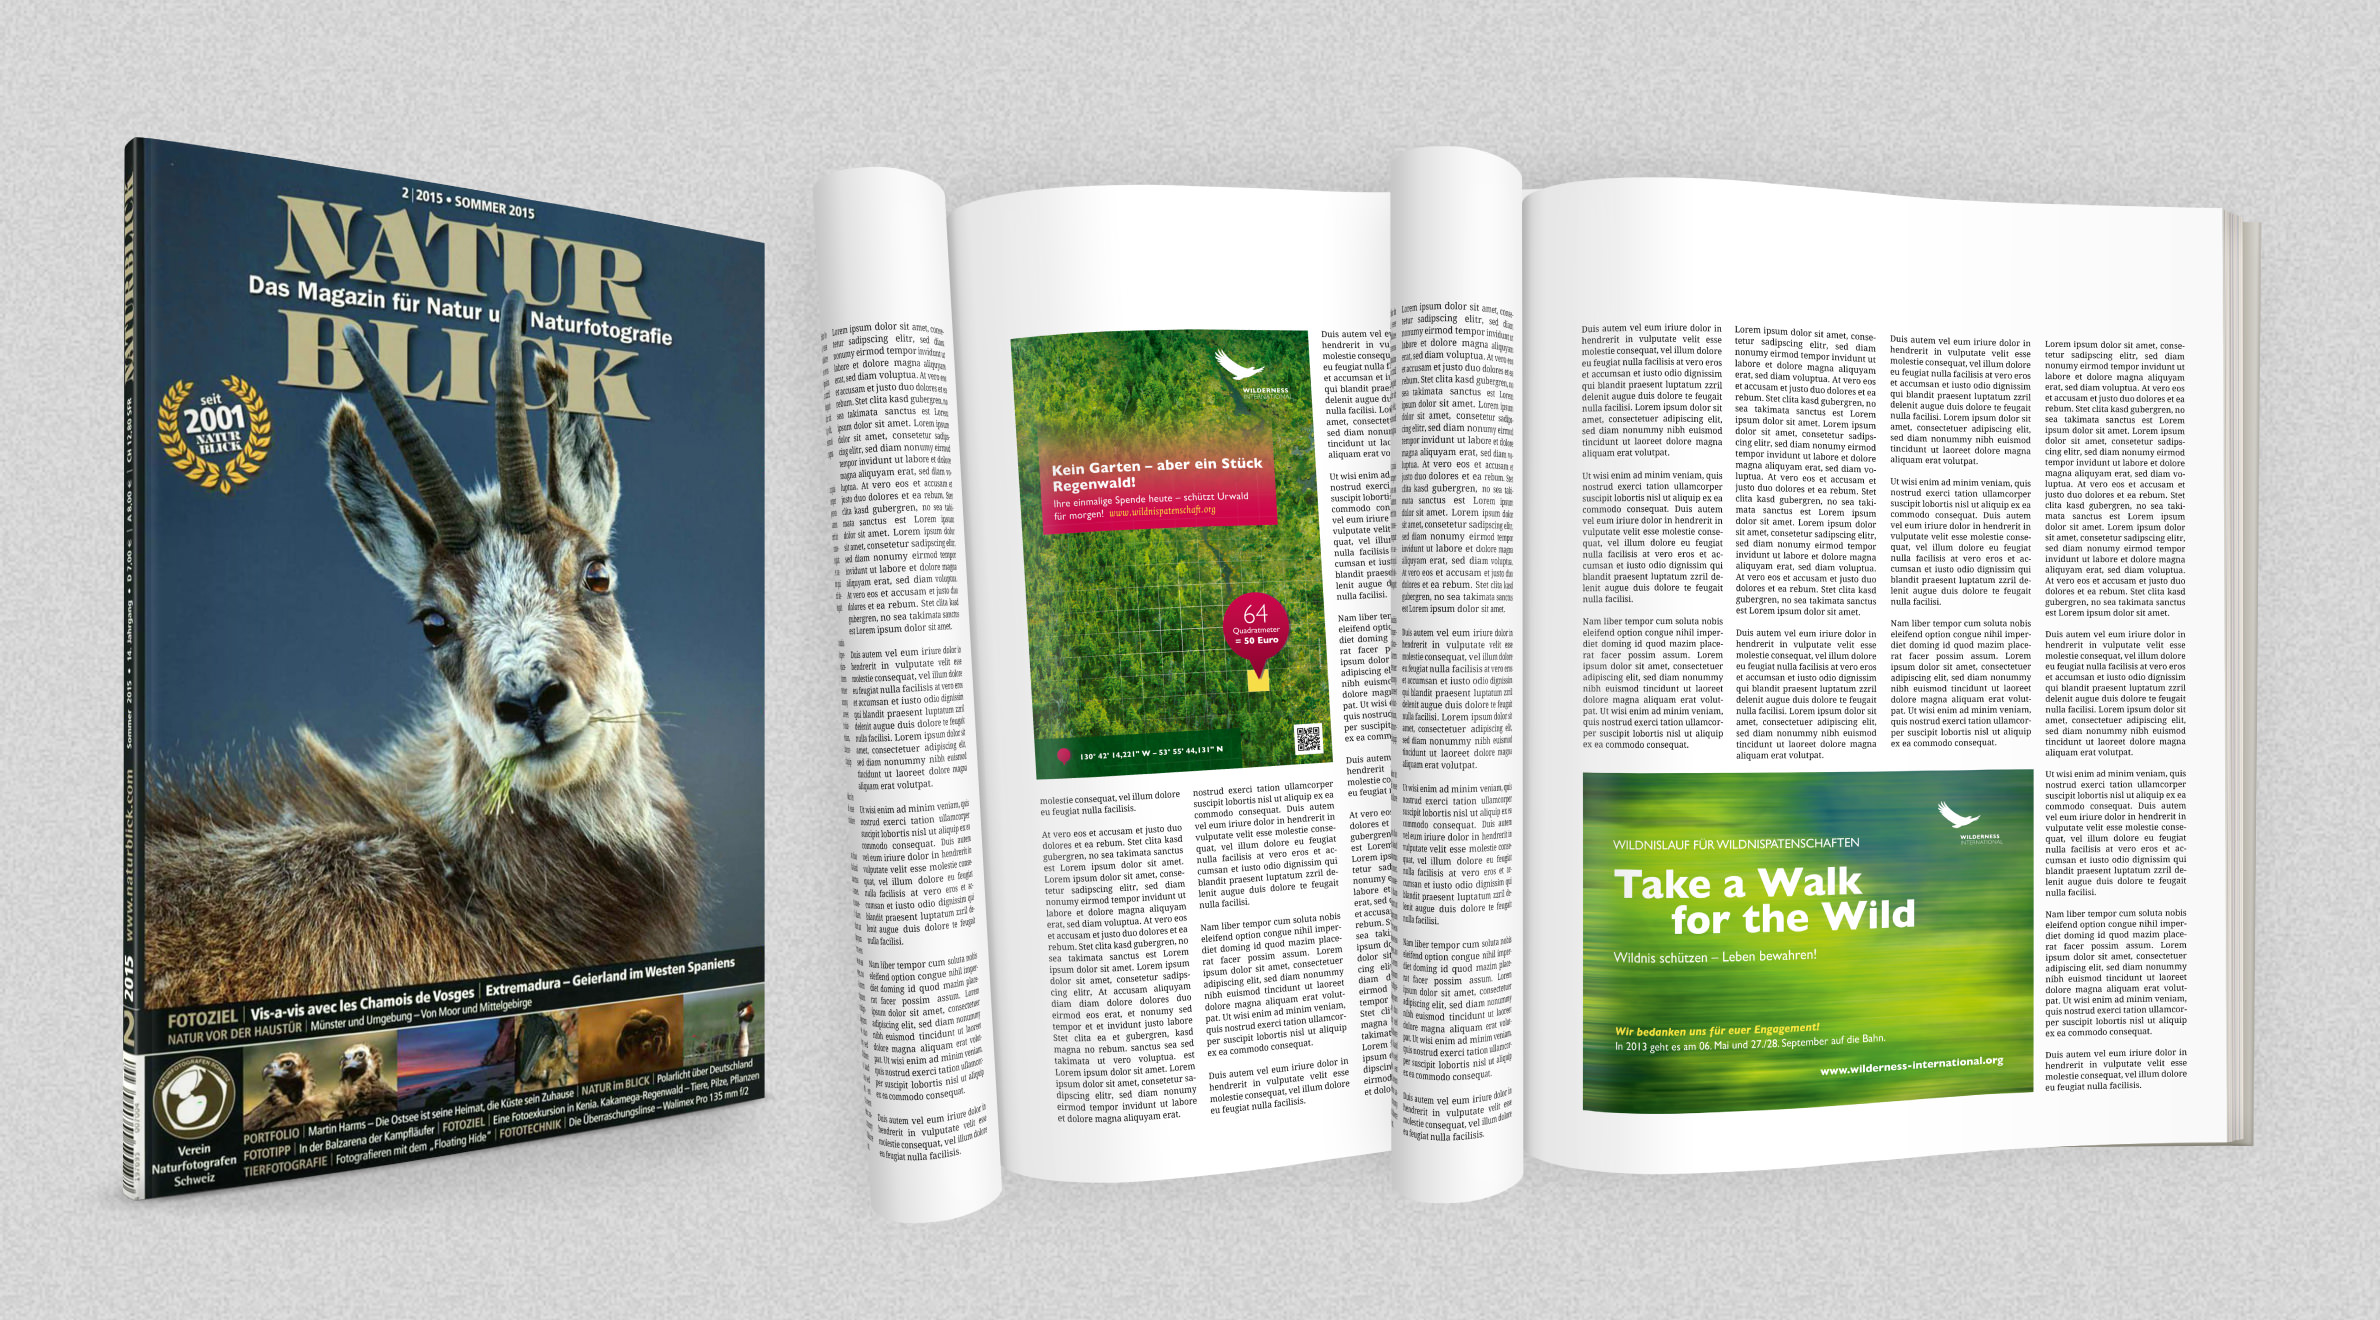 Wilderness International, Anzeigen - Magazin Naturblick